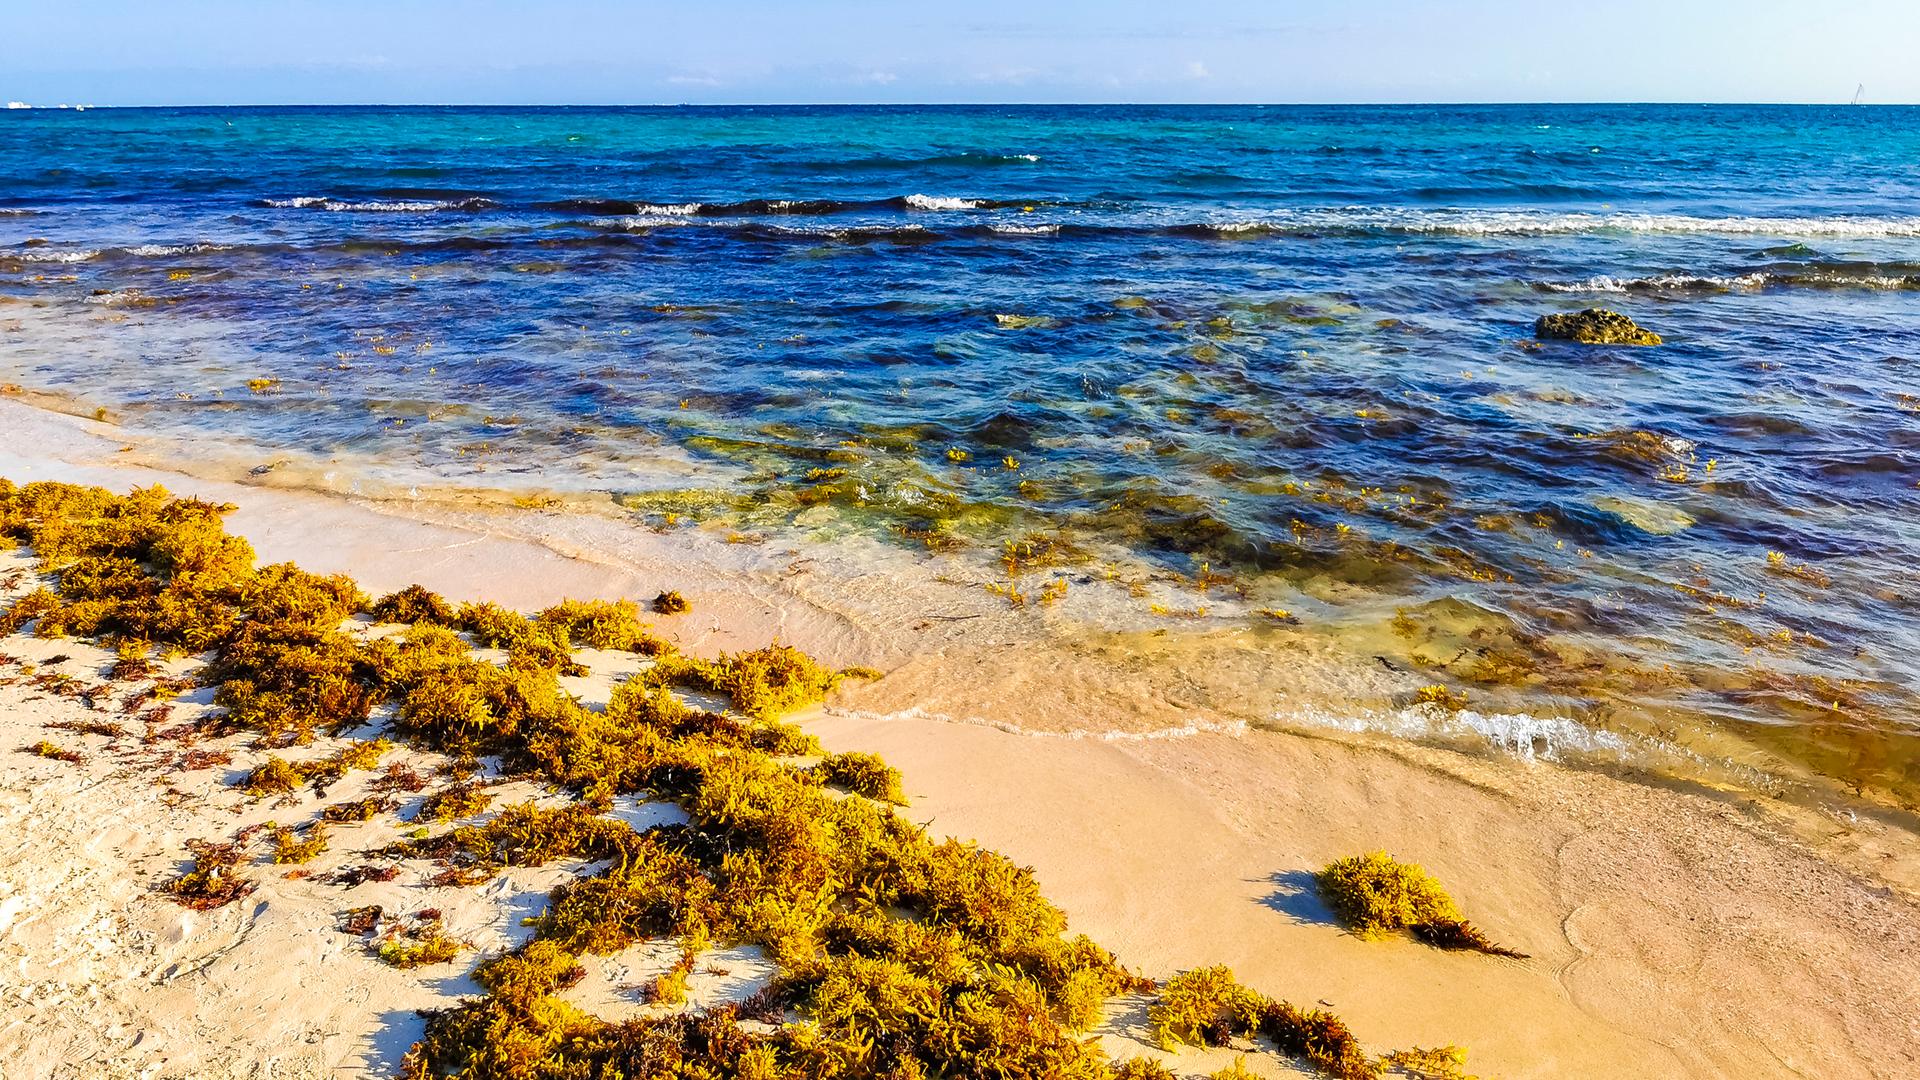 Am Playa del Carmen in Mexiko liegen angespülte Braunalgen der Gattung Sargassum.